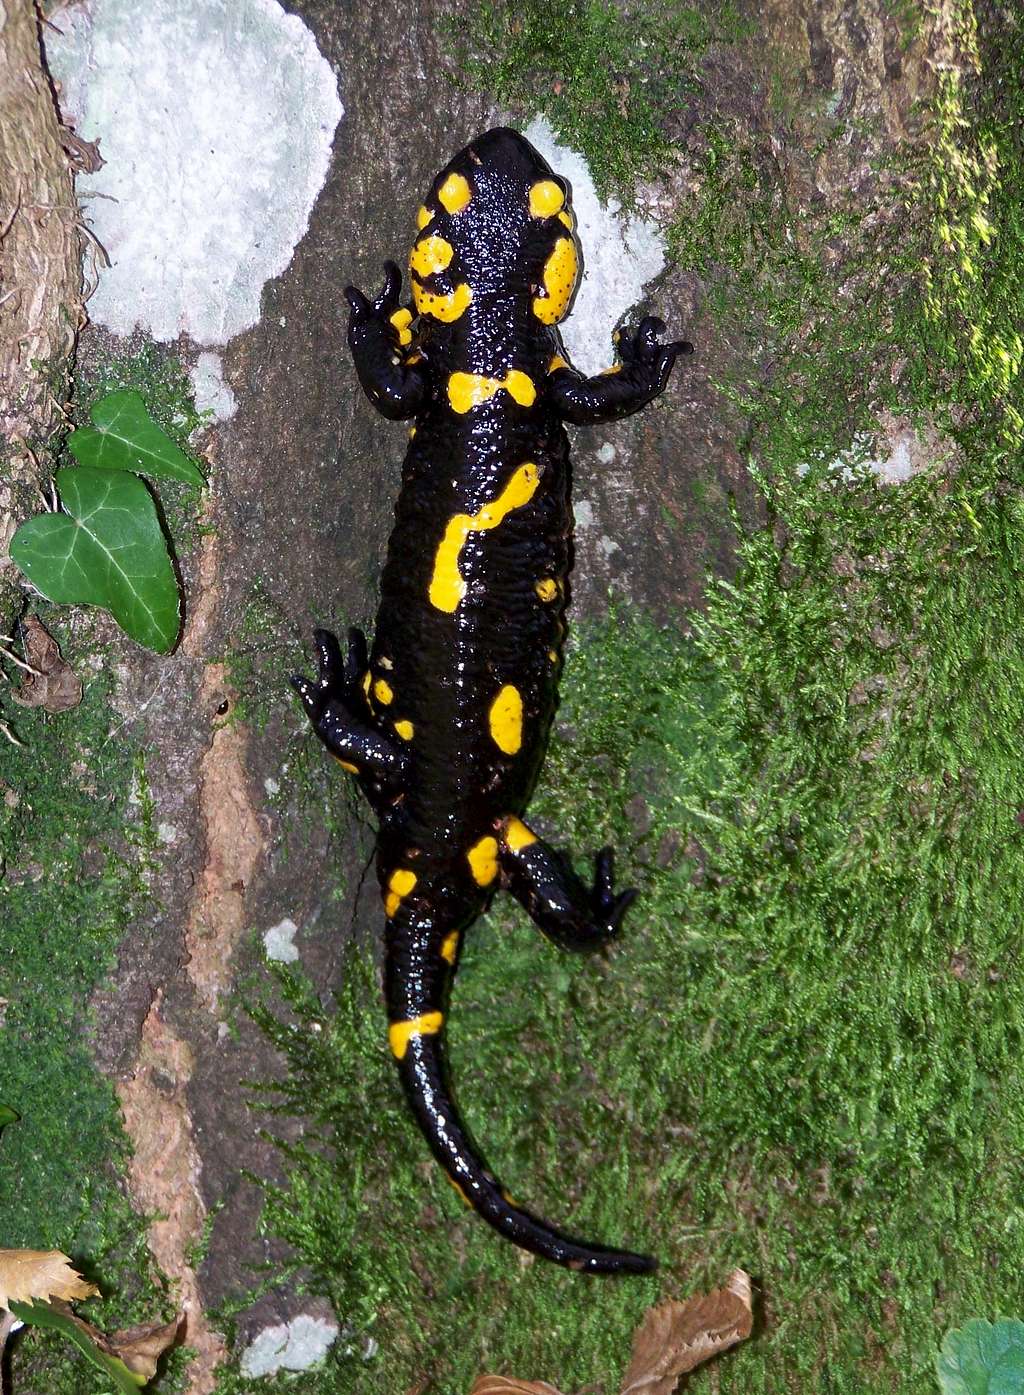 Fire salamander climbing a tree